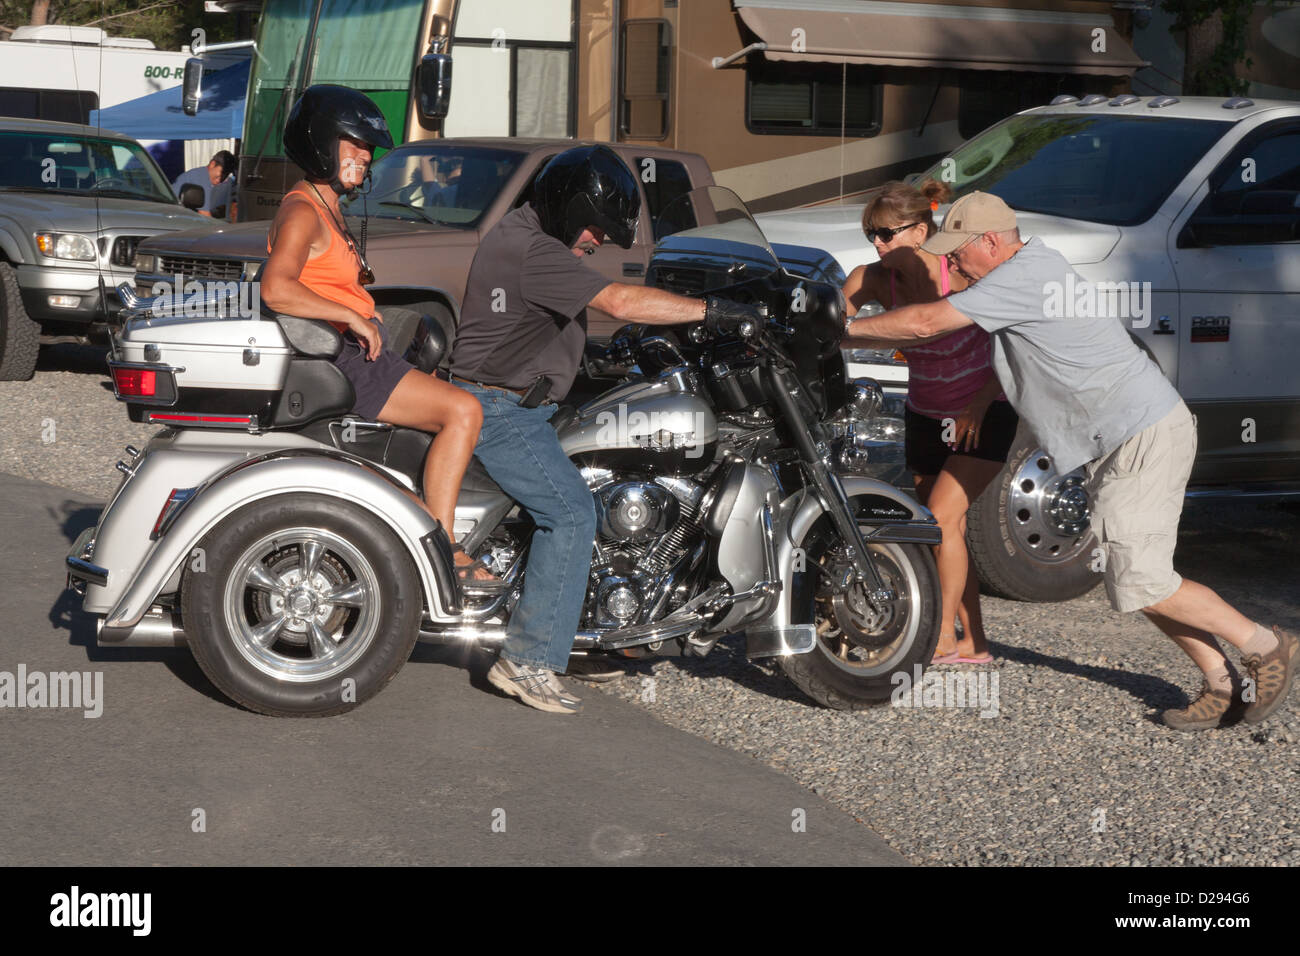 Moto Trike Harley-Davidson deux personnes poussant deux coureurs Banque D'Images